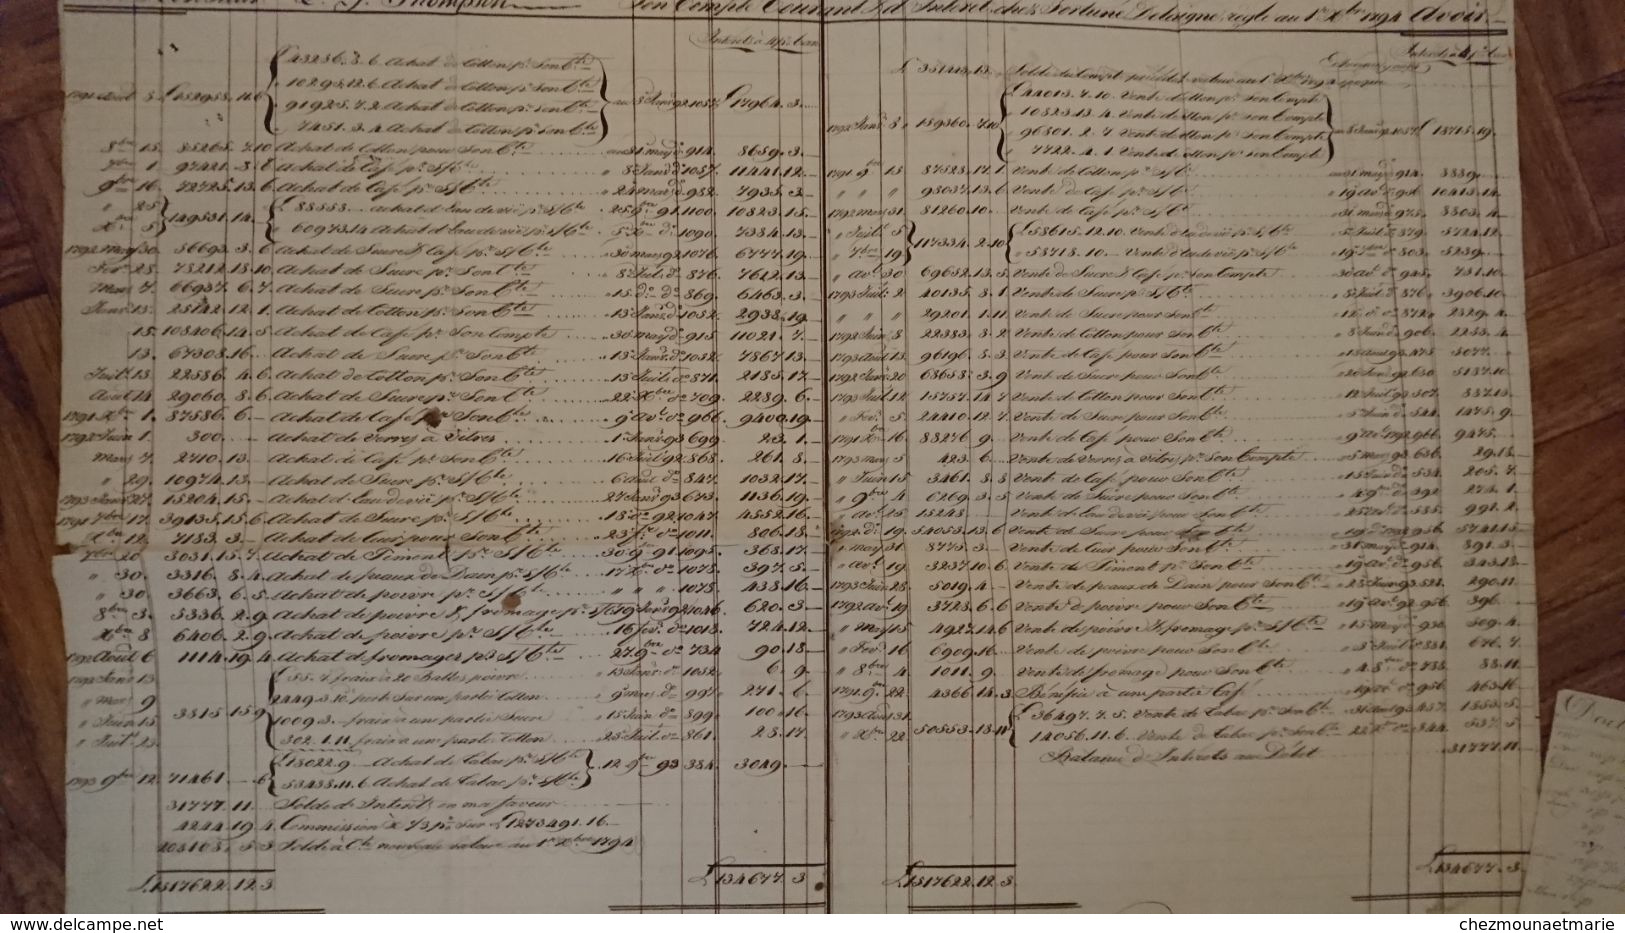 NAVIRES NEPTUNE VICTOIRE FORT DE PAIX CAMILLE CASIMIR - L.G. THOMPSON 1794-1795-1797 COMPTE CHEZ DELAVIGNE HAMBOURG - Historical Documents